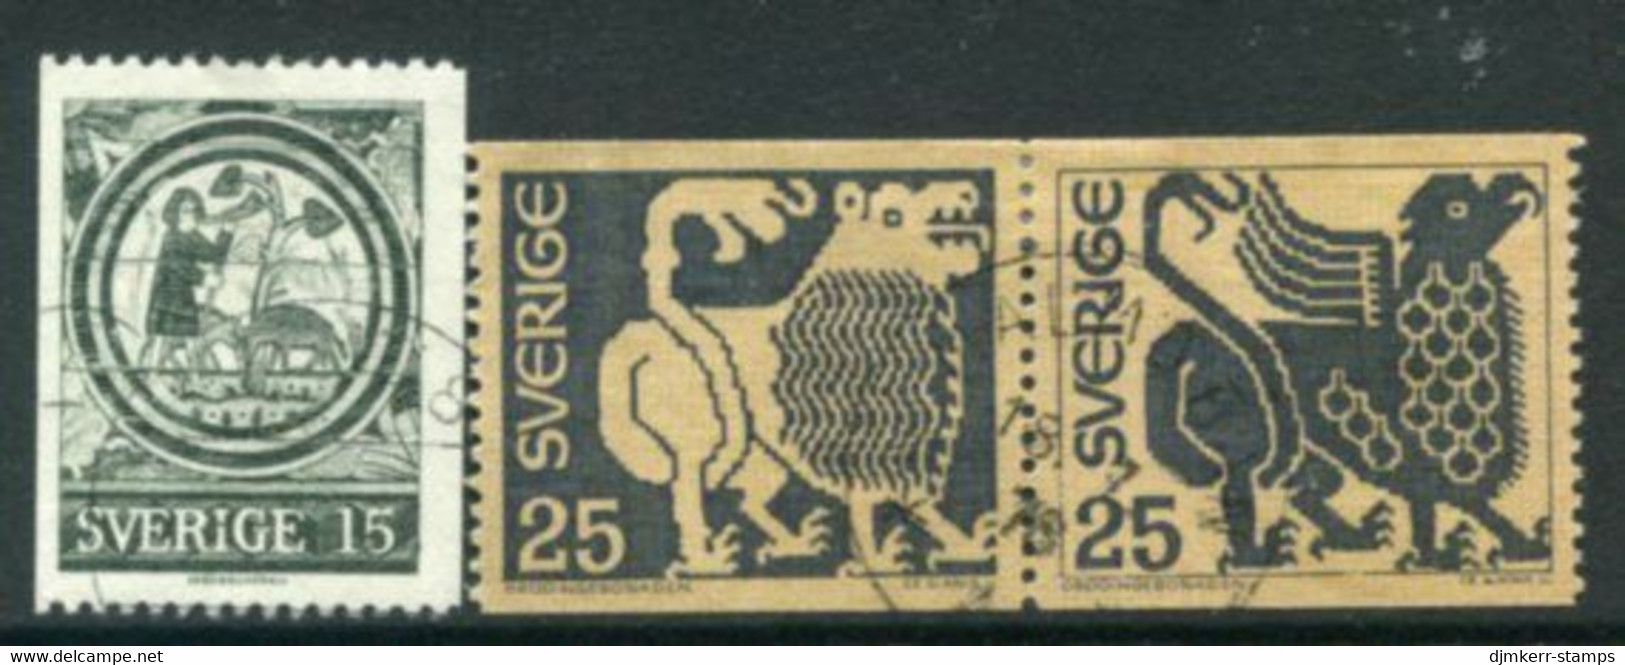 SWEDEN 1971 Definitive: Art Used.  Michel 706-08 - Gebraucht